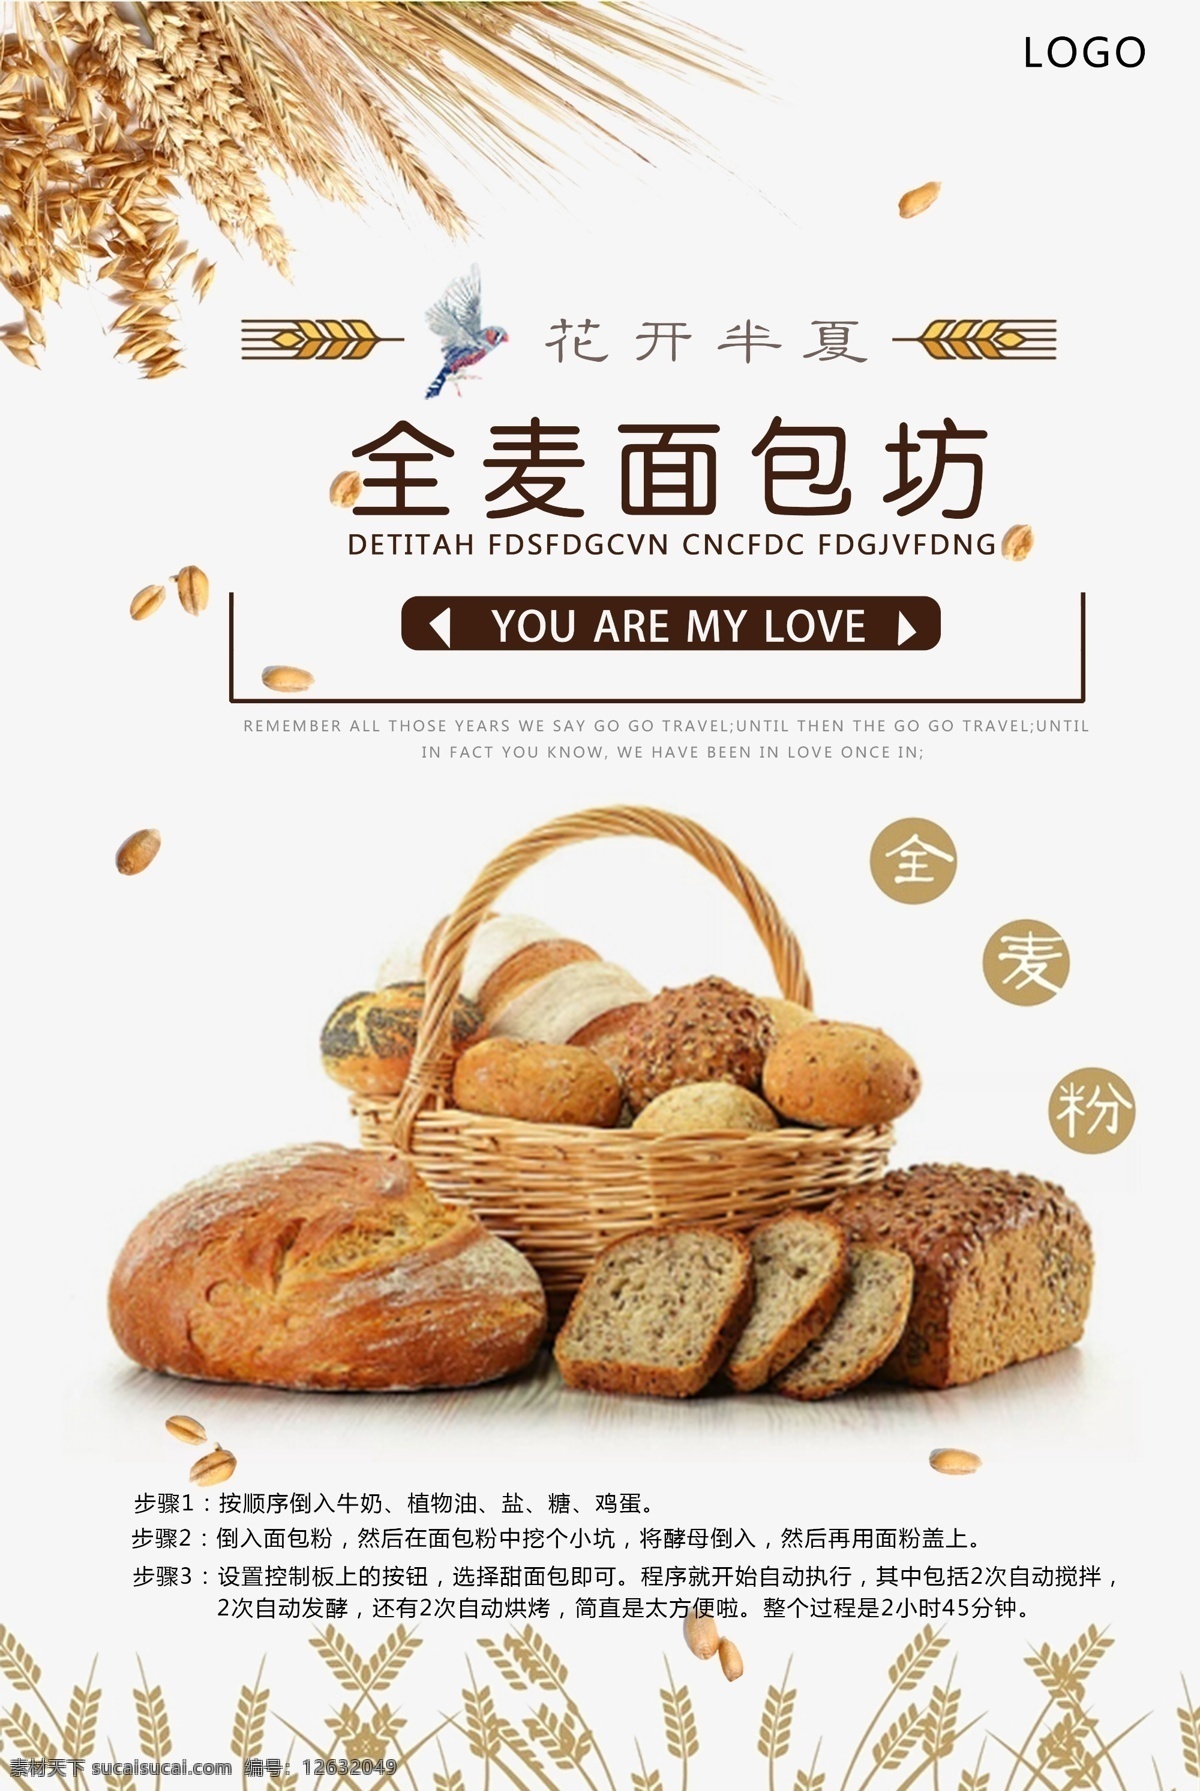 面包房海报 面包 美食 大麦 吃货 面包卷 面包片 粮食 食物